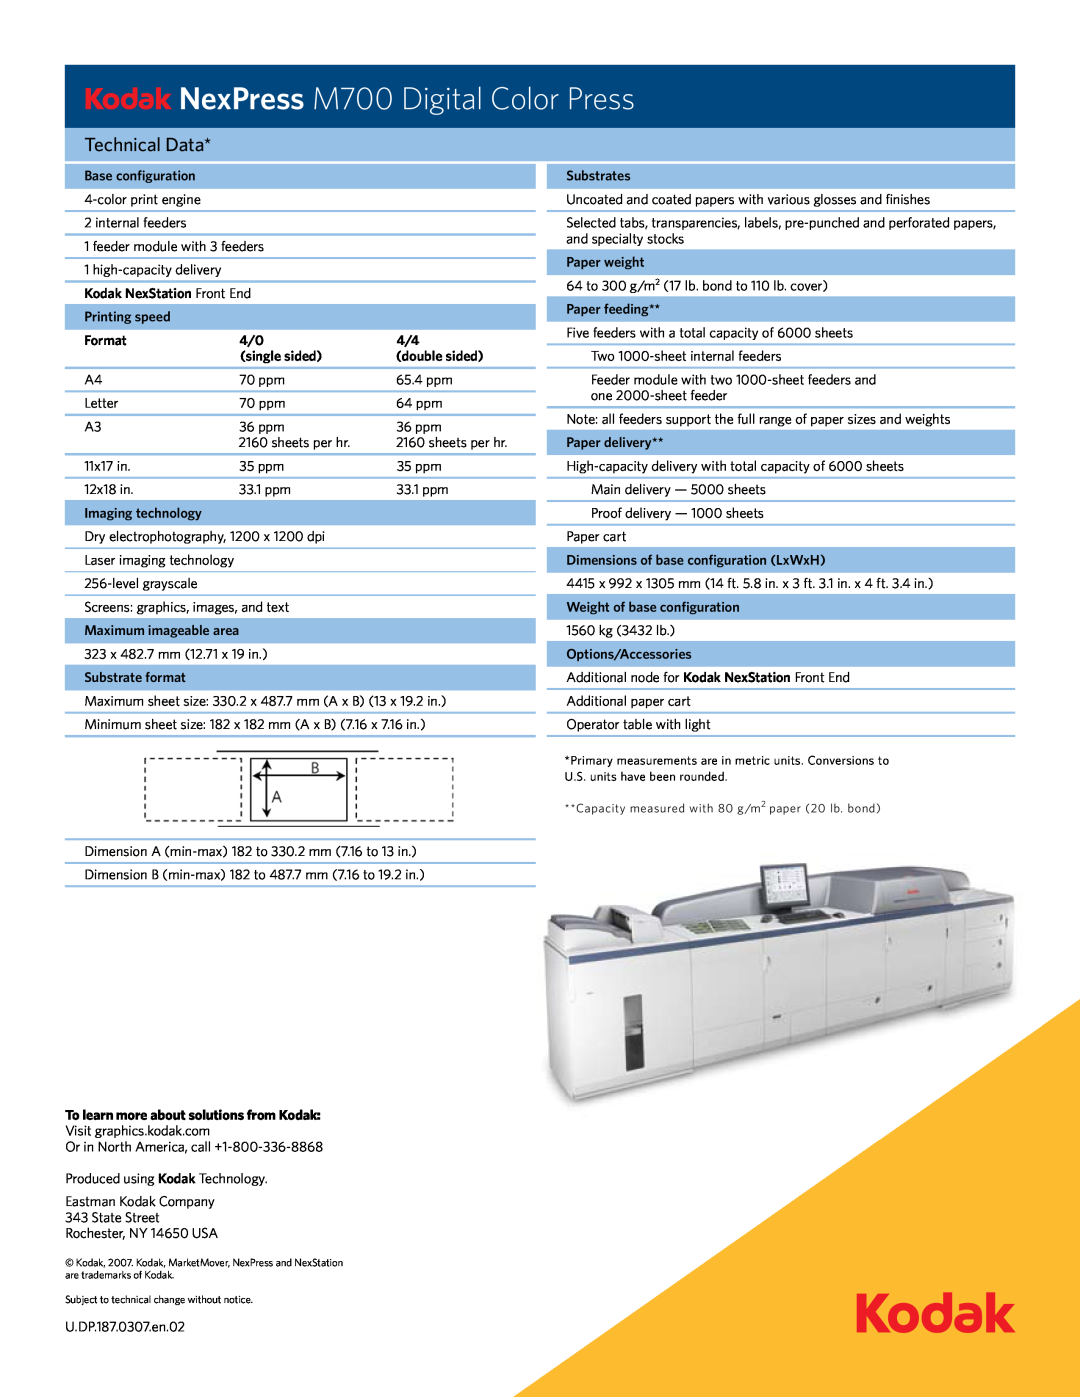 Kodak manual NexPress M700 Digital Color Press, Technical Data 